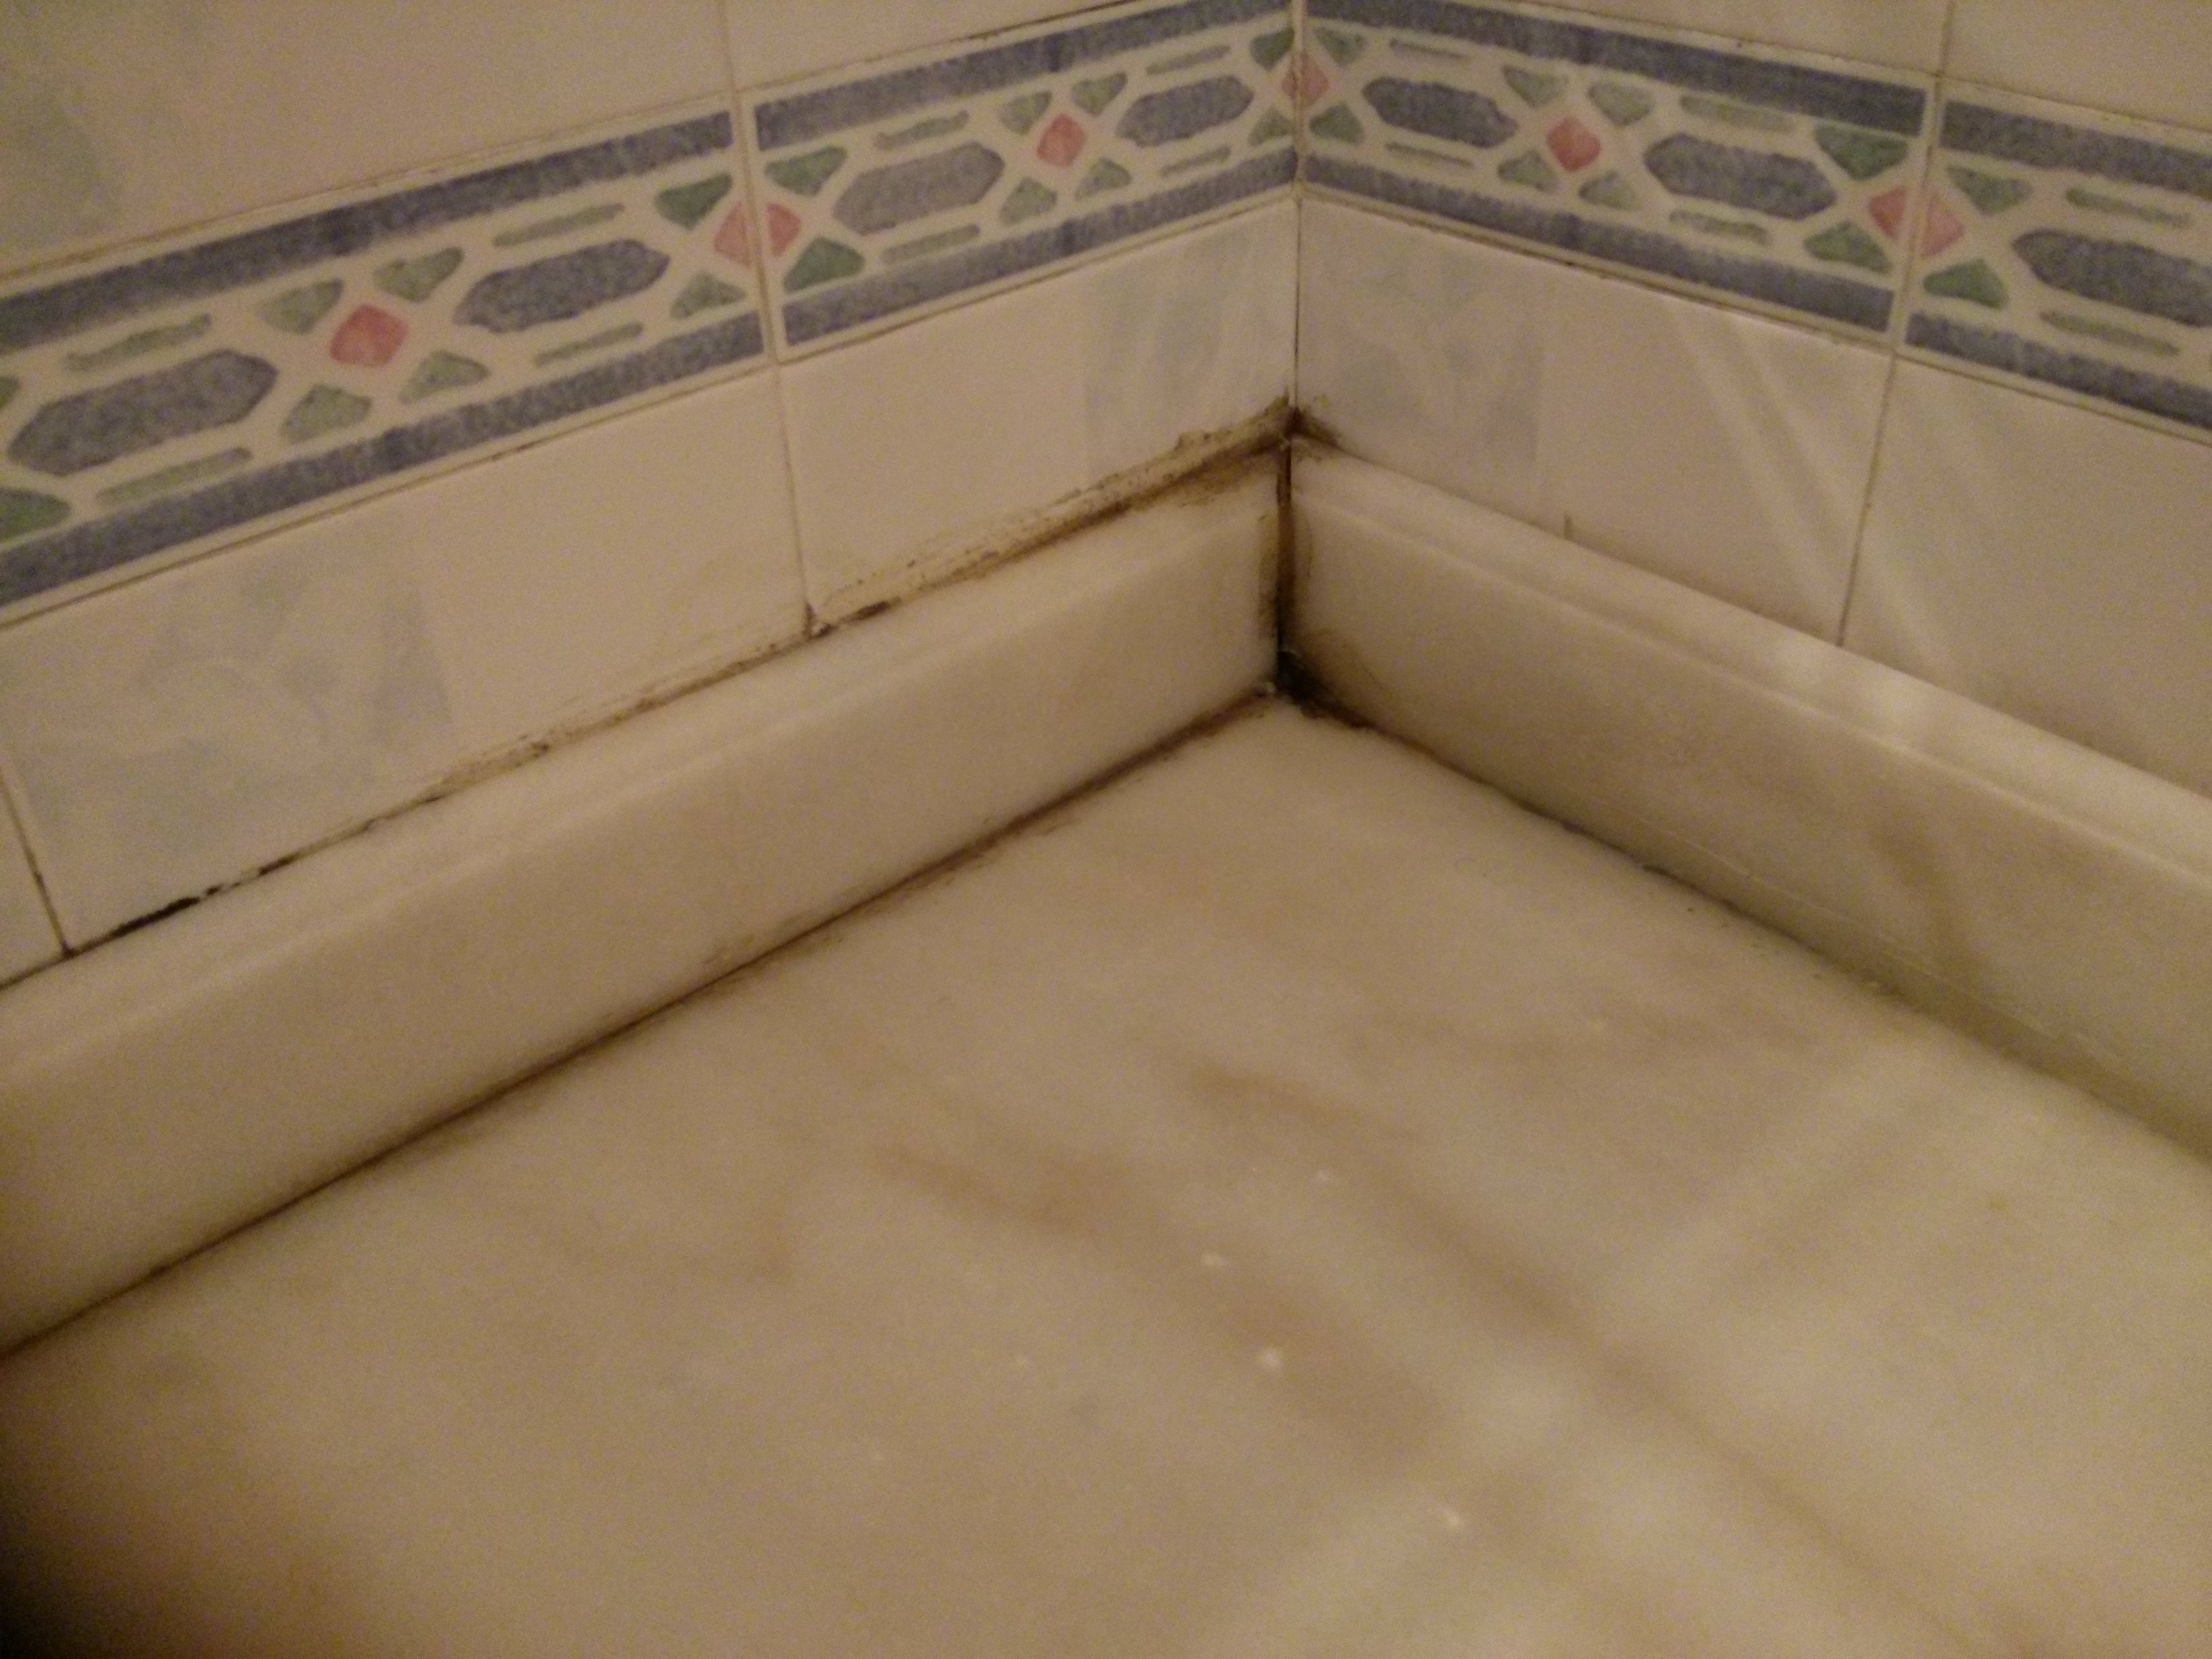 5 Upstairs bathroom mold